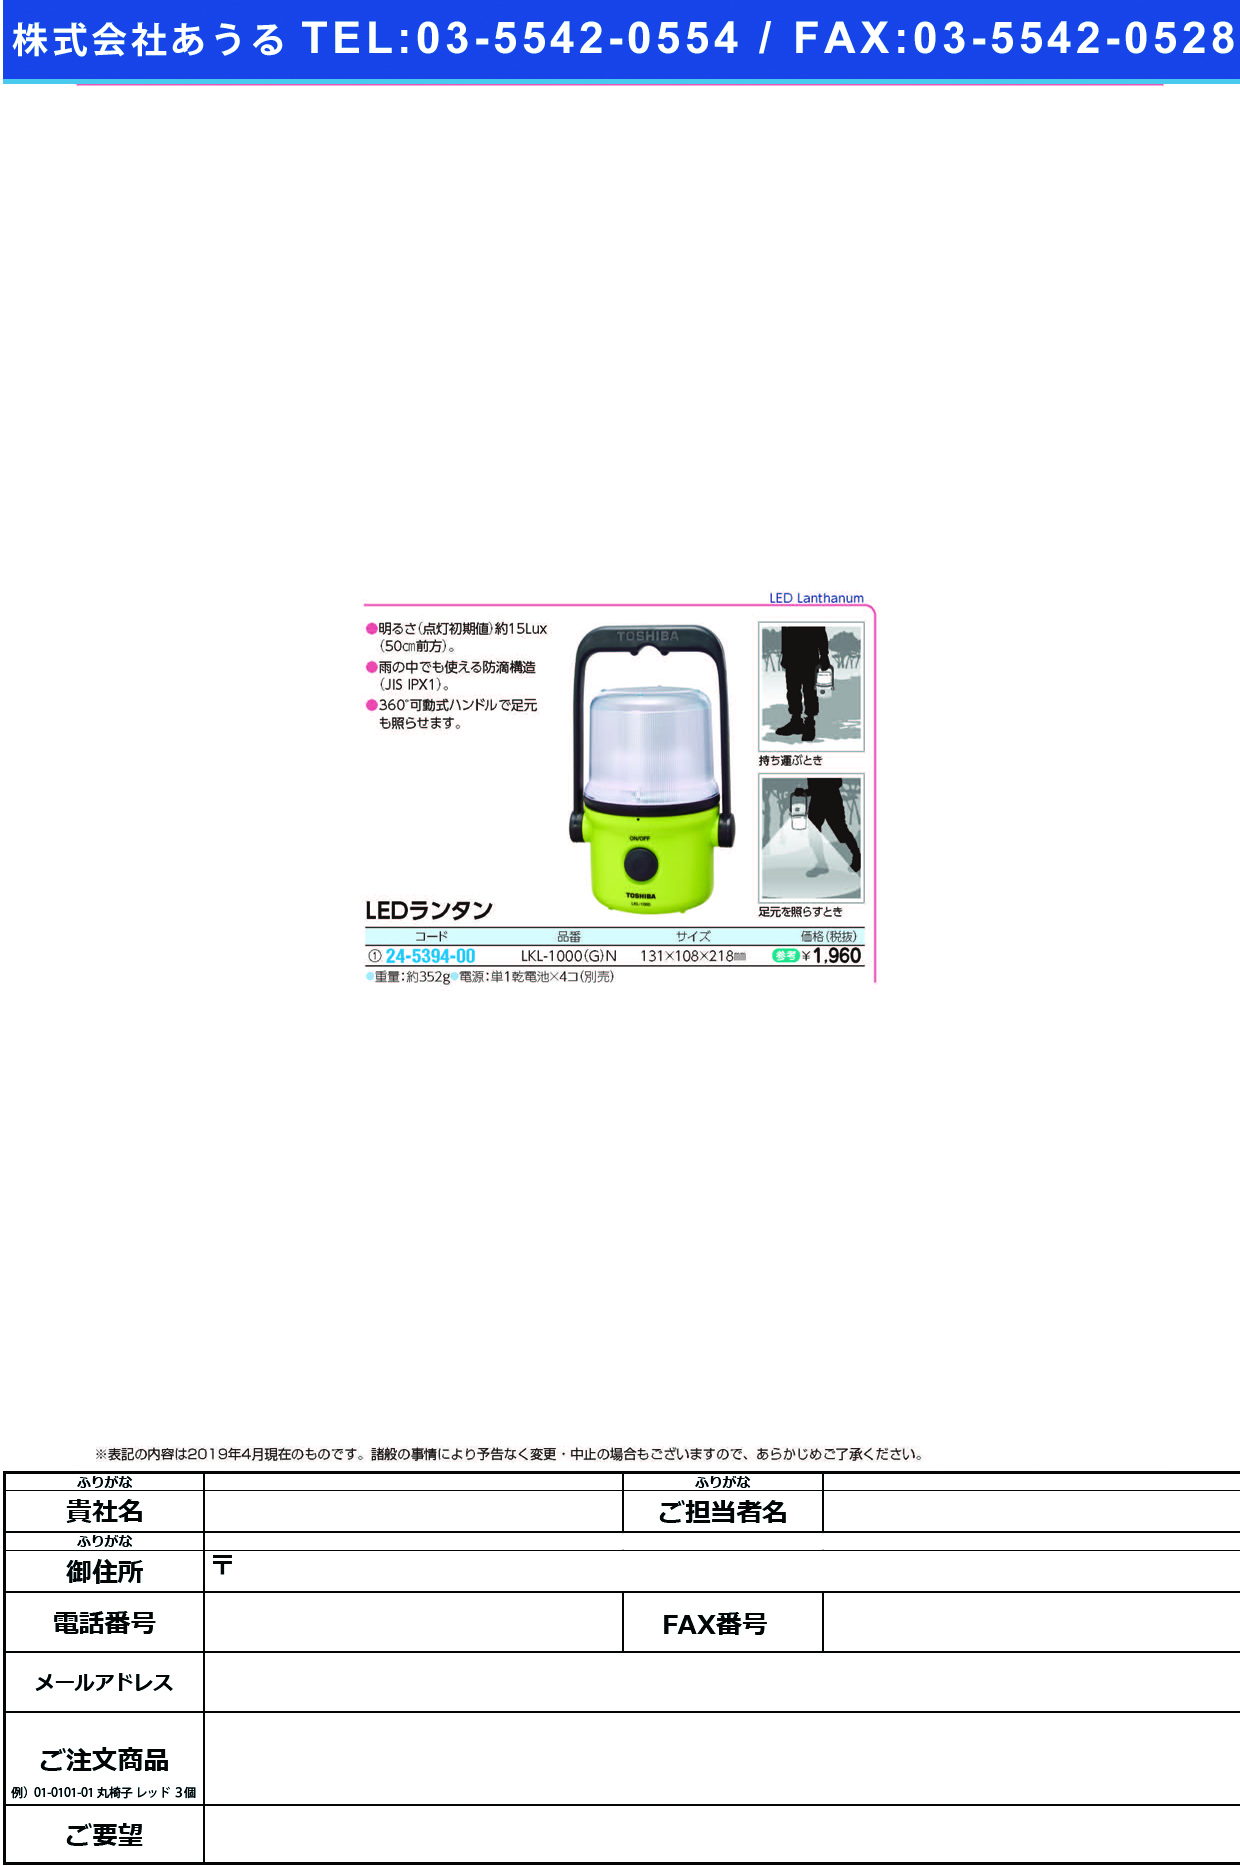 (24-5394-00)ＬＥＤランタン LKL-1000(G)N LEDﾗﾝﾀﾝ【1個単位】【2019年カタログ商品】